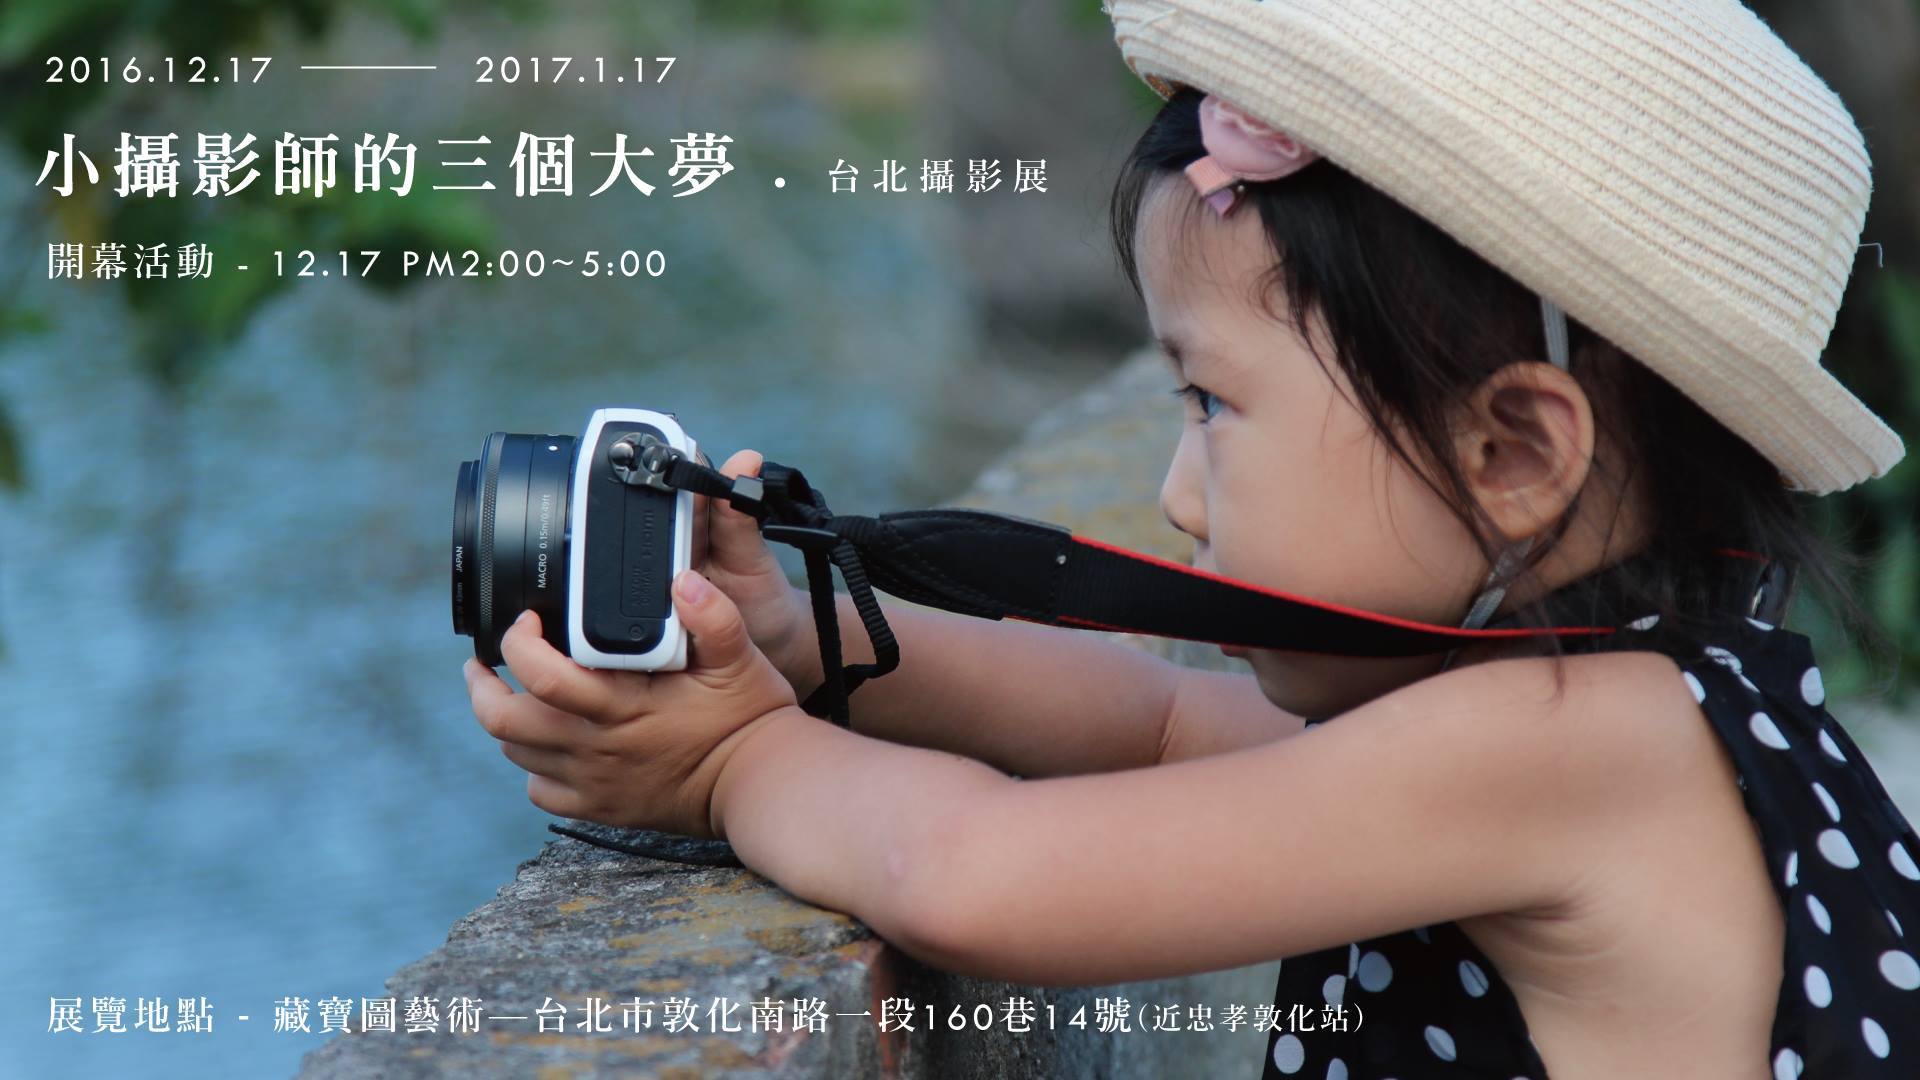 〈小攝影師的三個大夢 - 台北攝影展〉